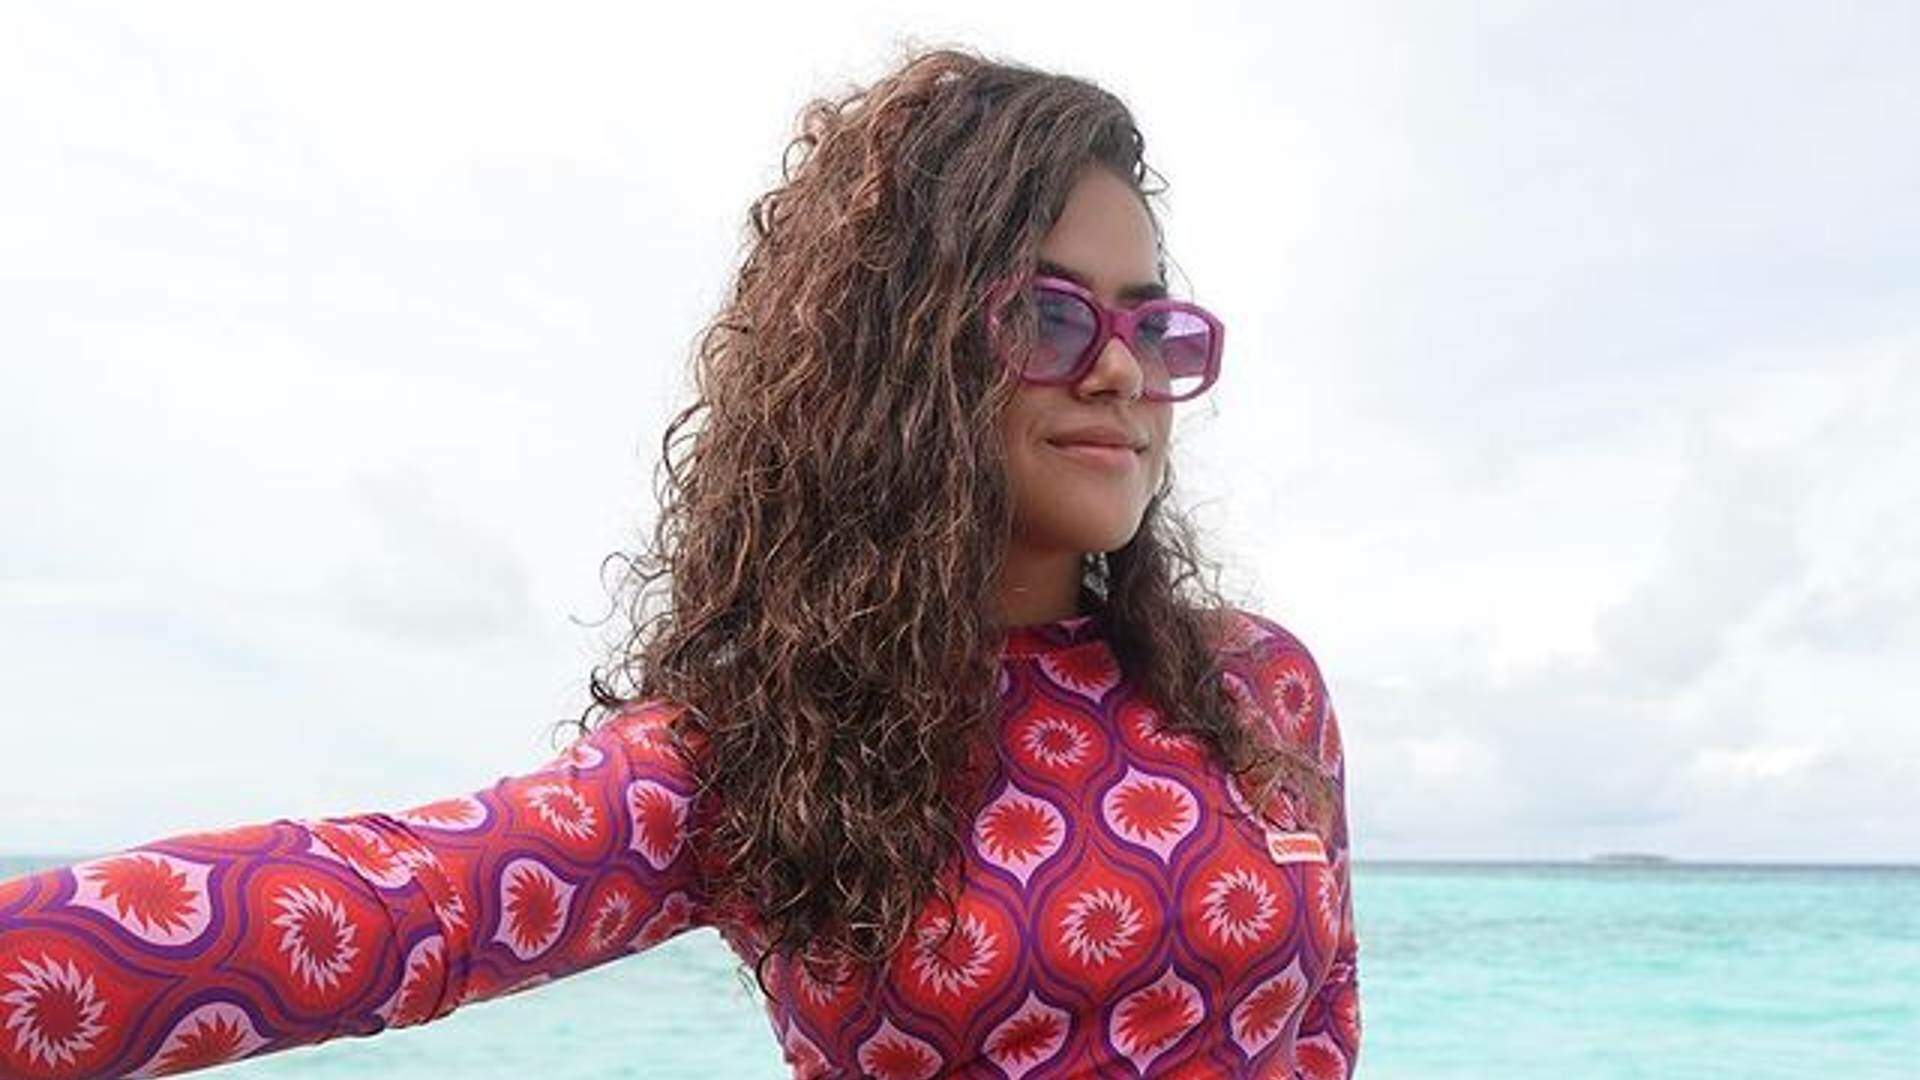 Maisa Silva cava calcinha no limite e mostra corpão na praia e fã diz: “Essa vou printar” - Metropolitana FM